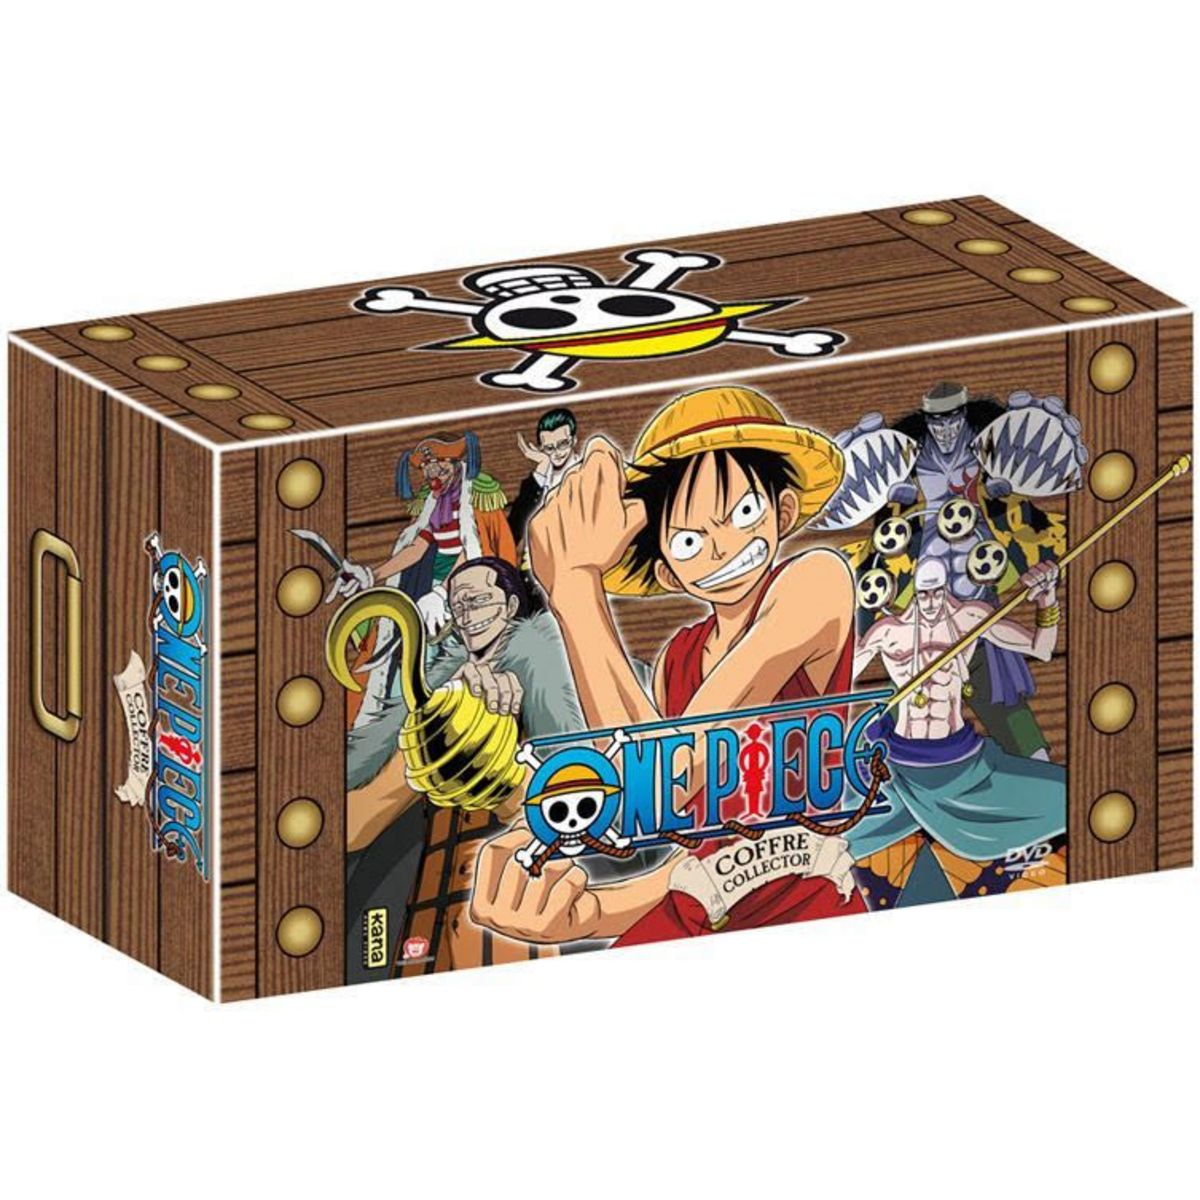 One Piece - Partie 1 Collector - 15 Coffrets DVD - 195 Eps. pas